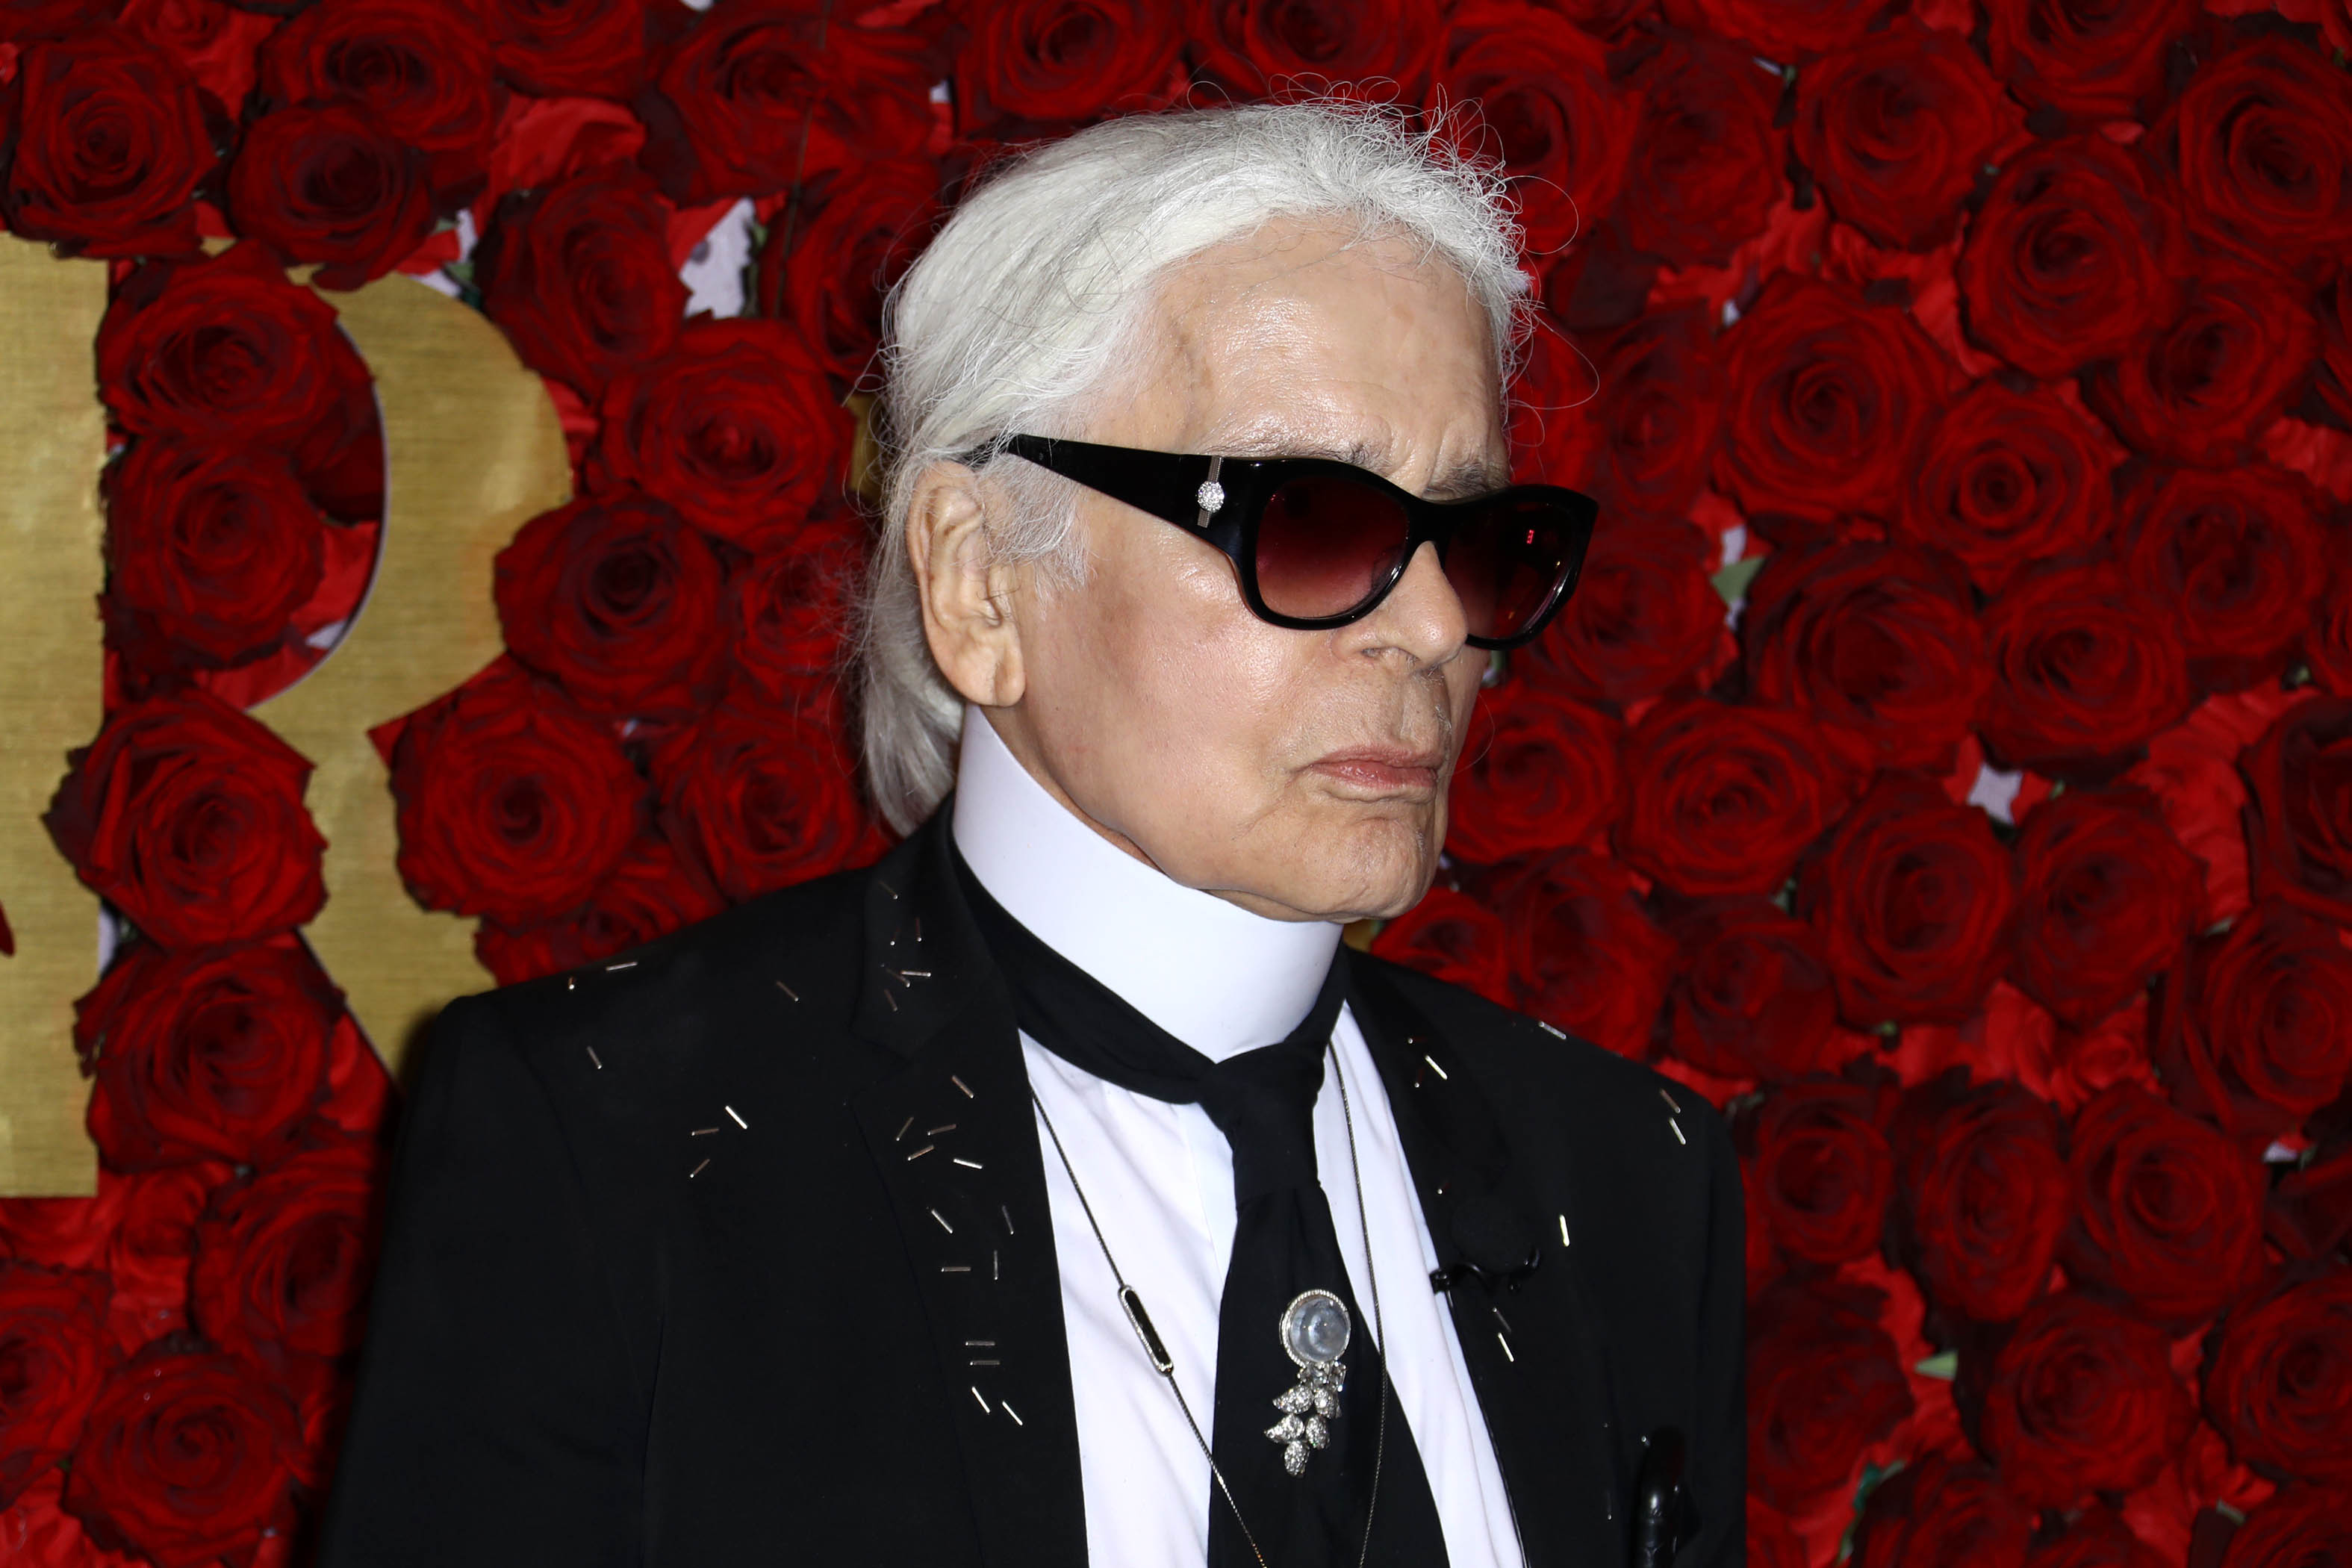 Karl Lagerfeld, Iconic Fashion Designer, Has Died | FASHION